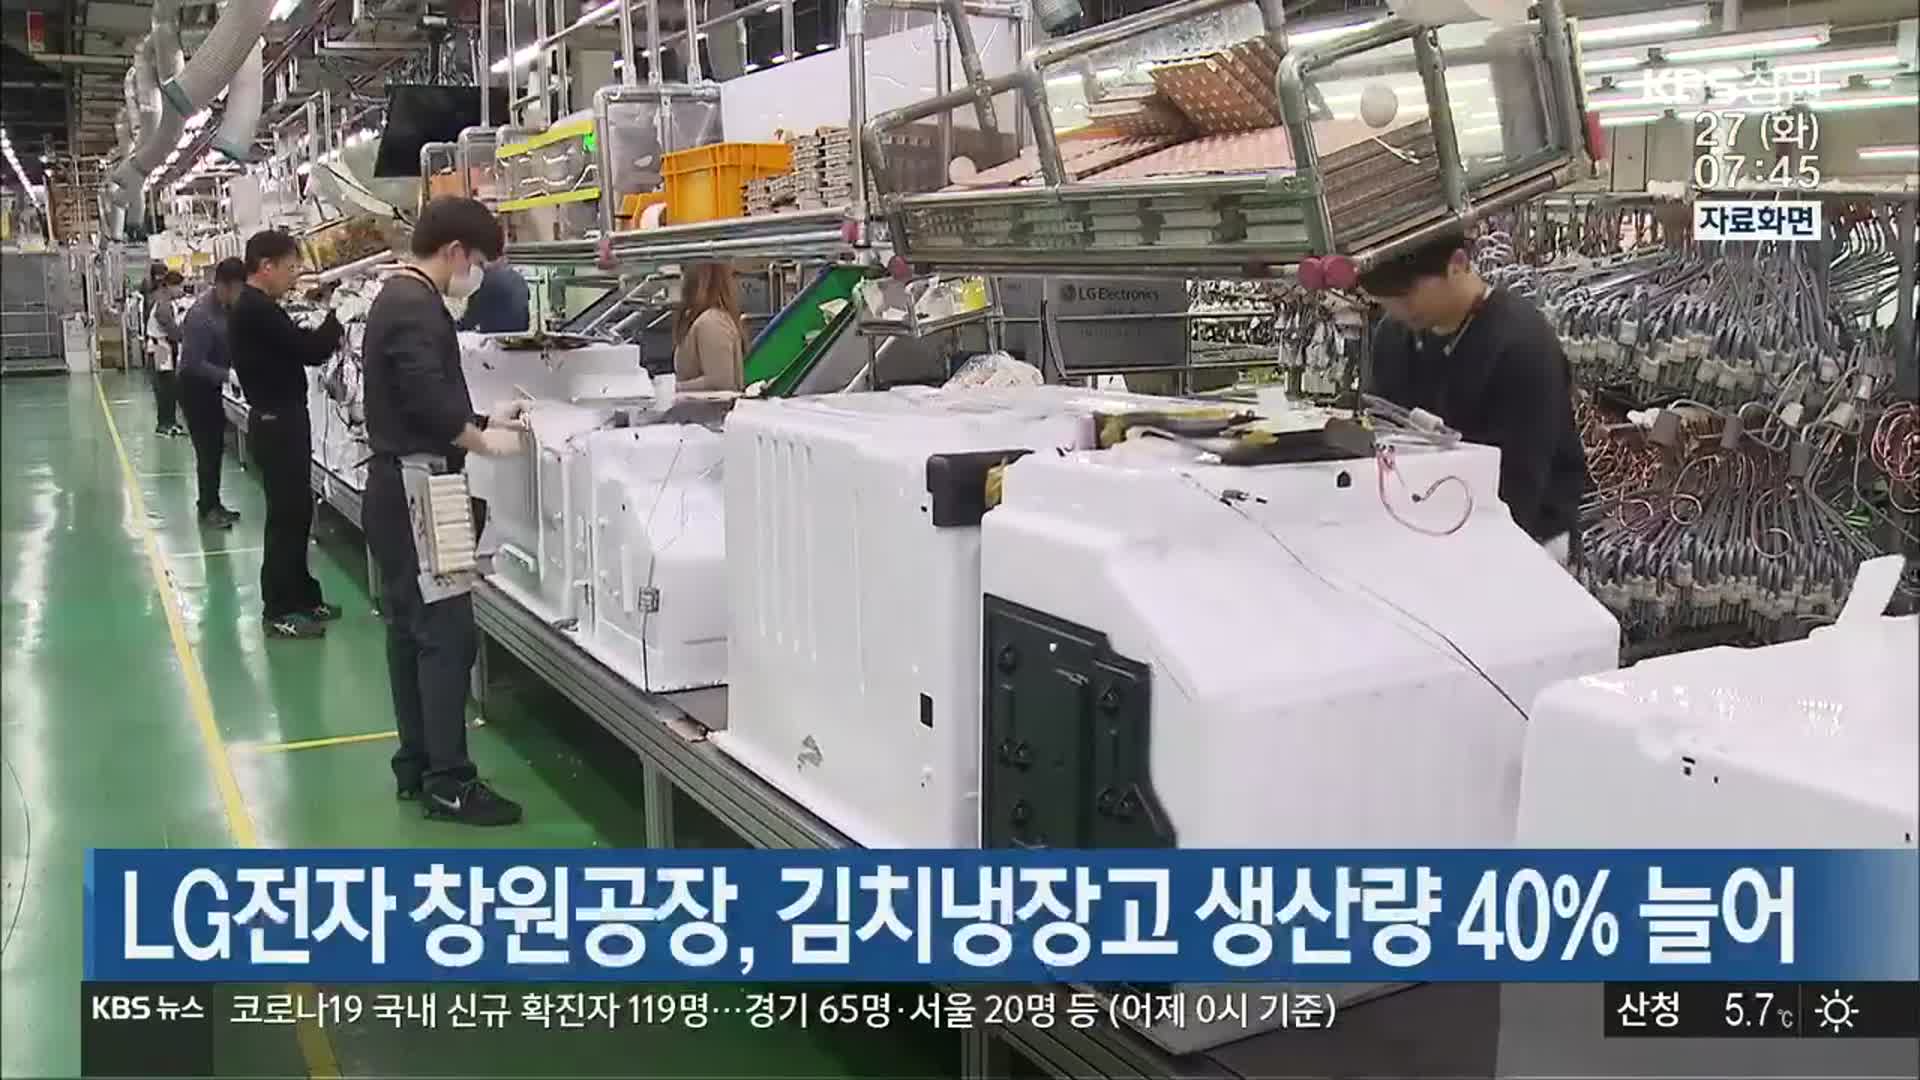 LG전자 창원공장, 김치냉장고 생산량 40% 늘어